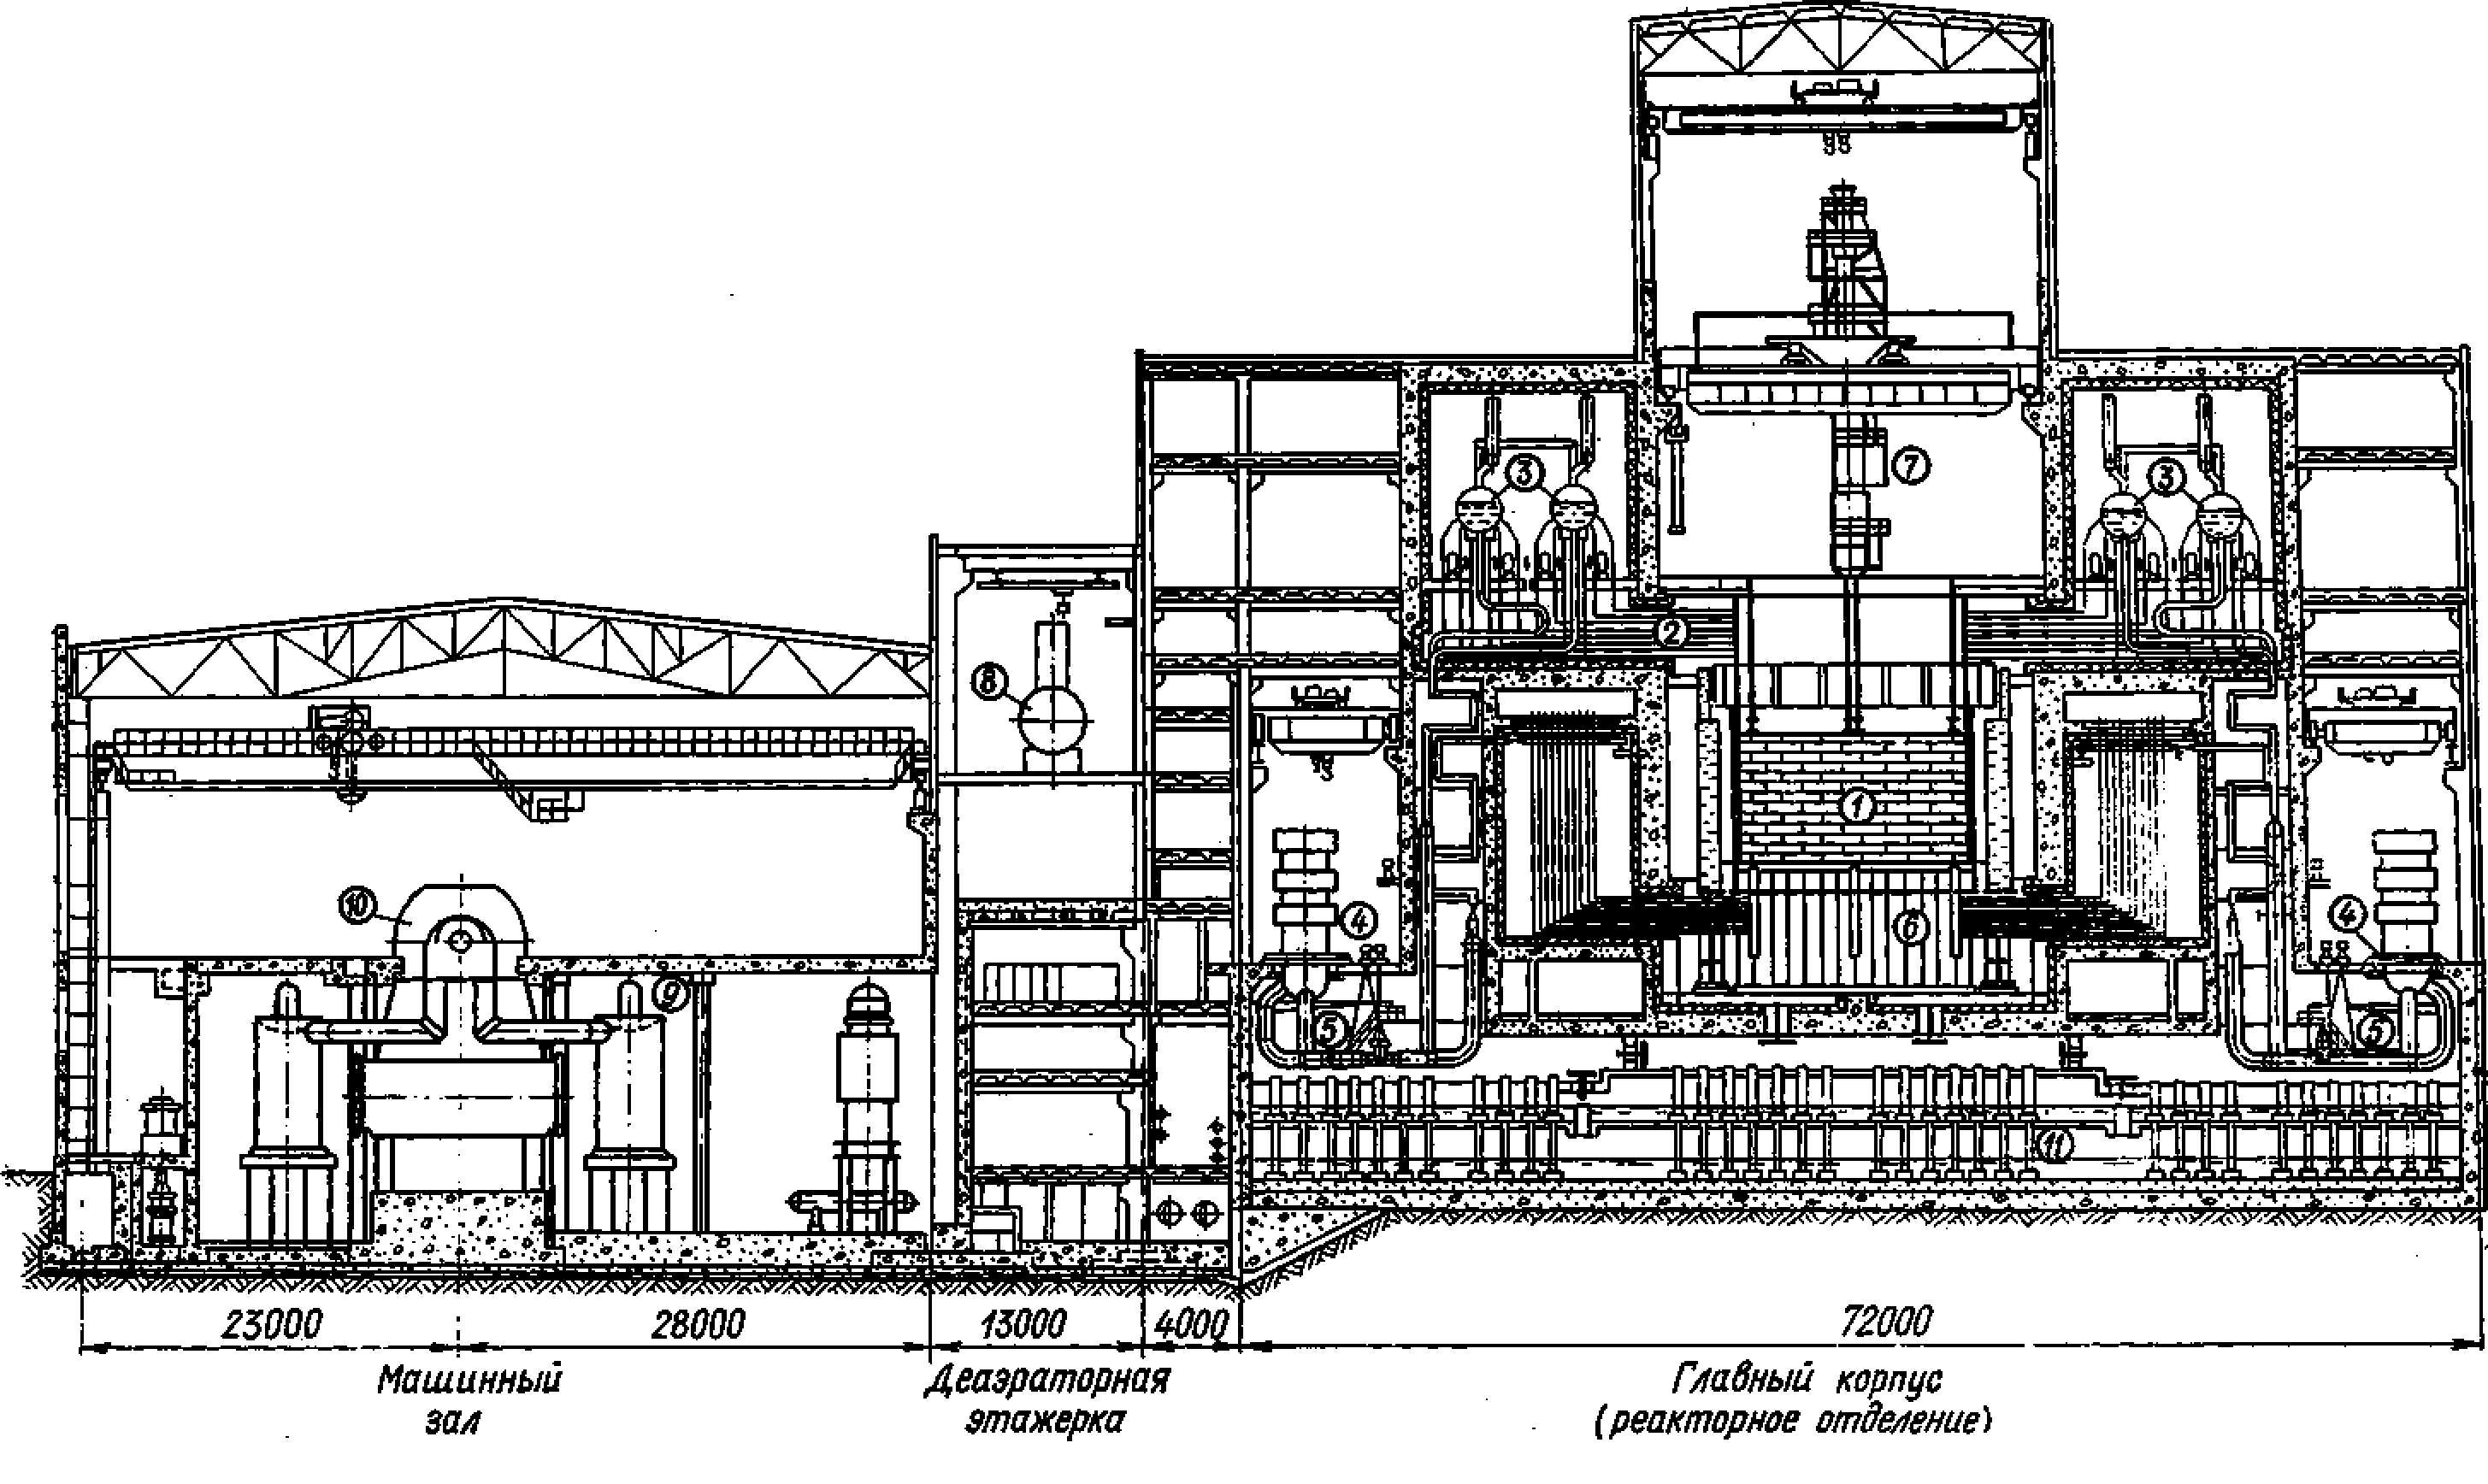 Аэс реакторы рбмк. Реактор РБМК-1000 Чернобыль. Чертежи реактора РБМК 1000 ЧАЭС. Реактор РБМК-1000 В разрезе. РБМК-1000 Чернобыльская АЭС 3 энергоблок.